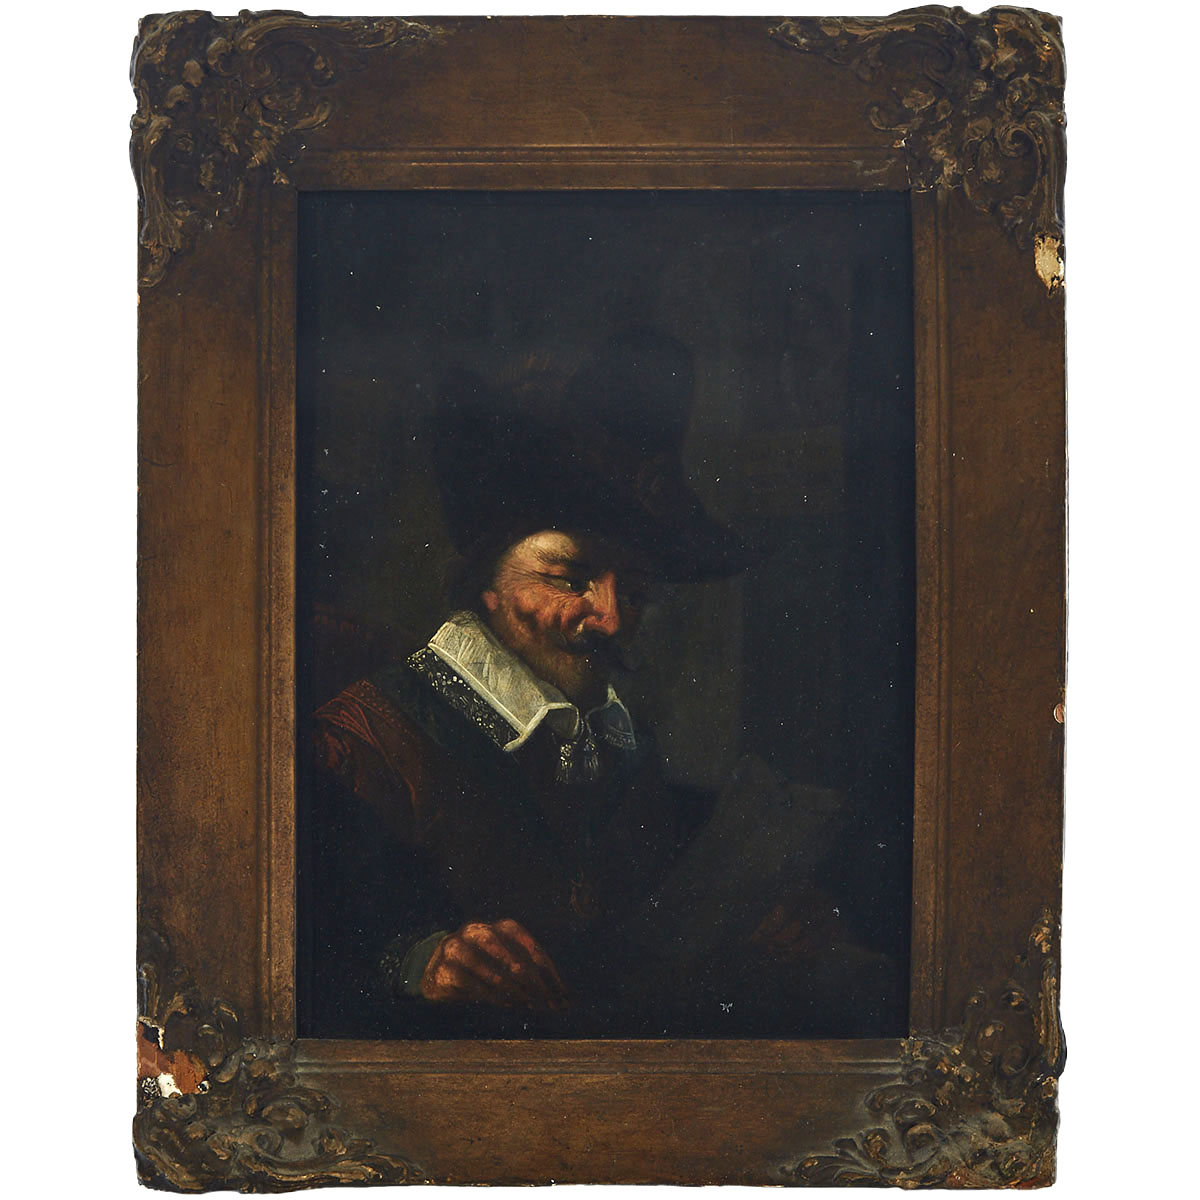 Follower of the School of Rembrandt Van Rijn (1606-1669)